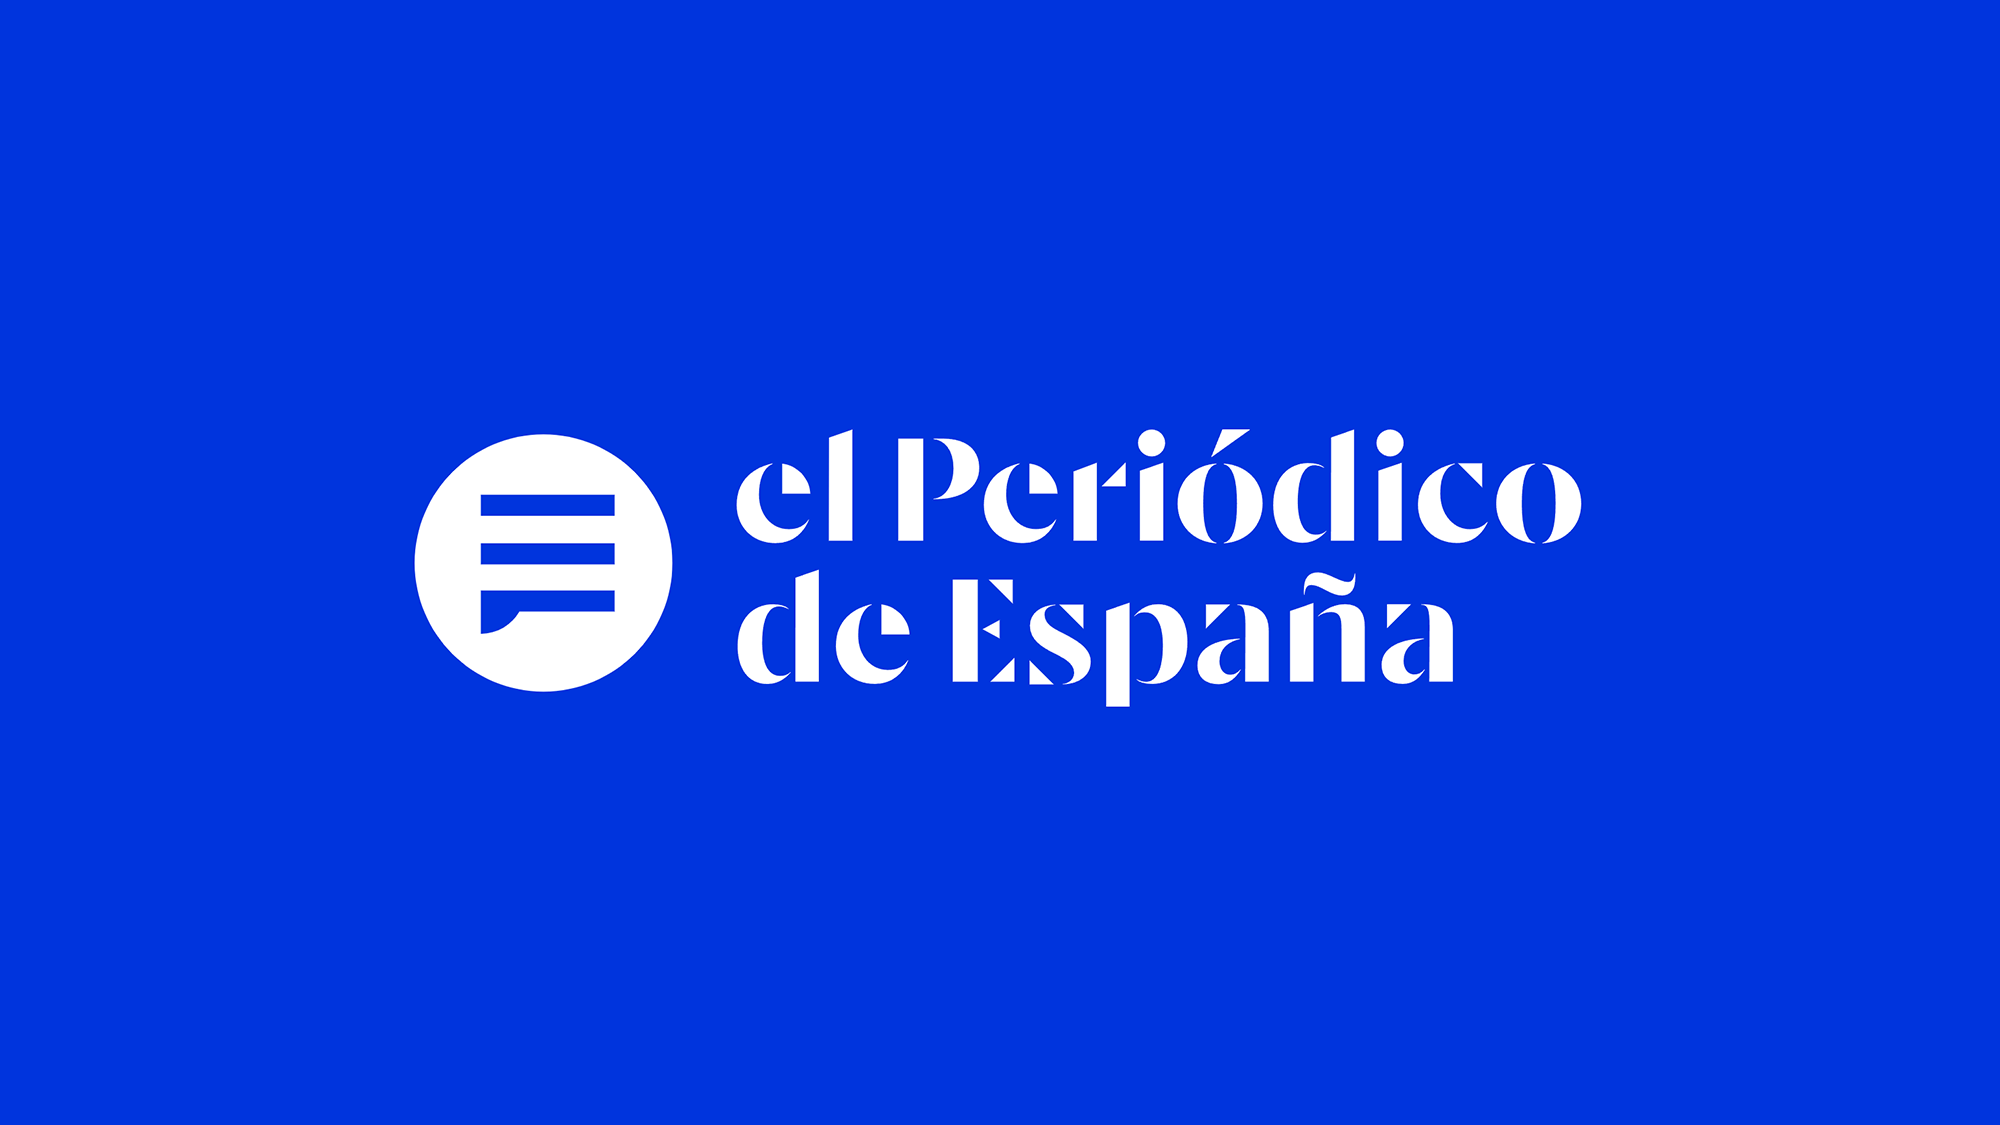 Brand New: New Logo and Identity for El Periódico de España by Futurebrand